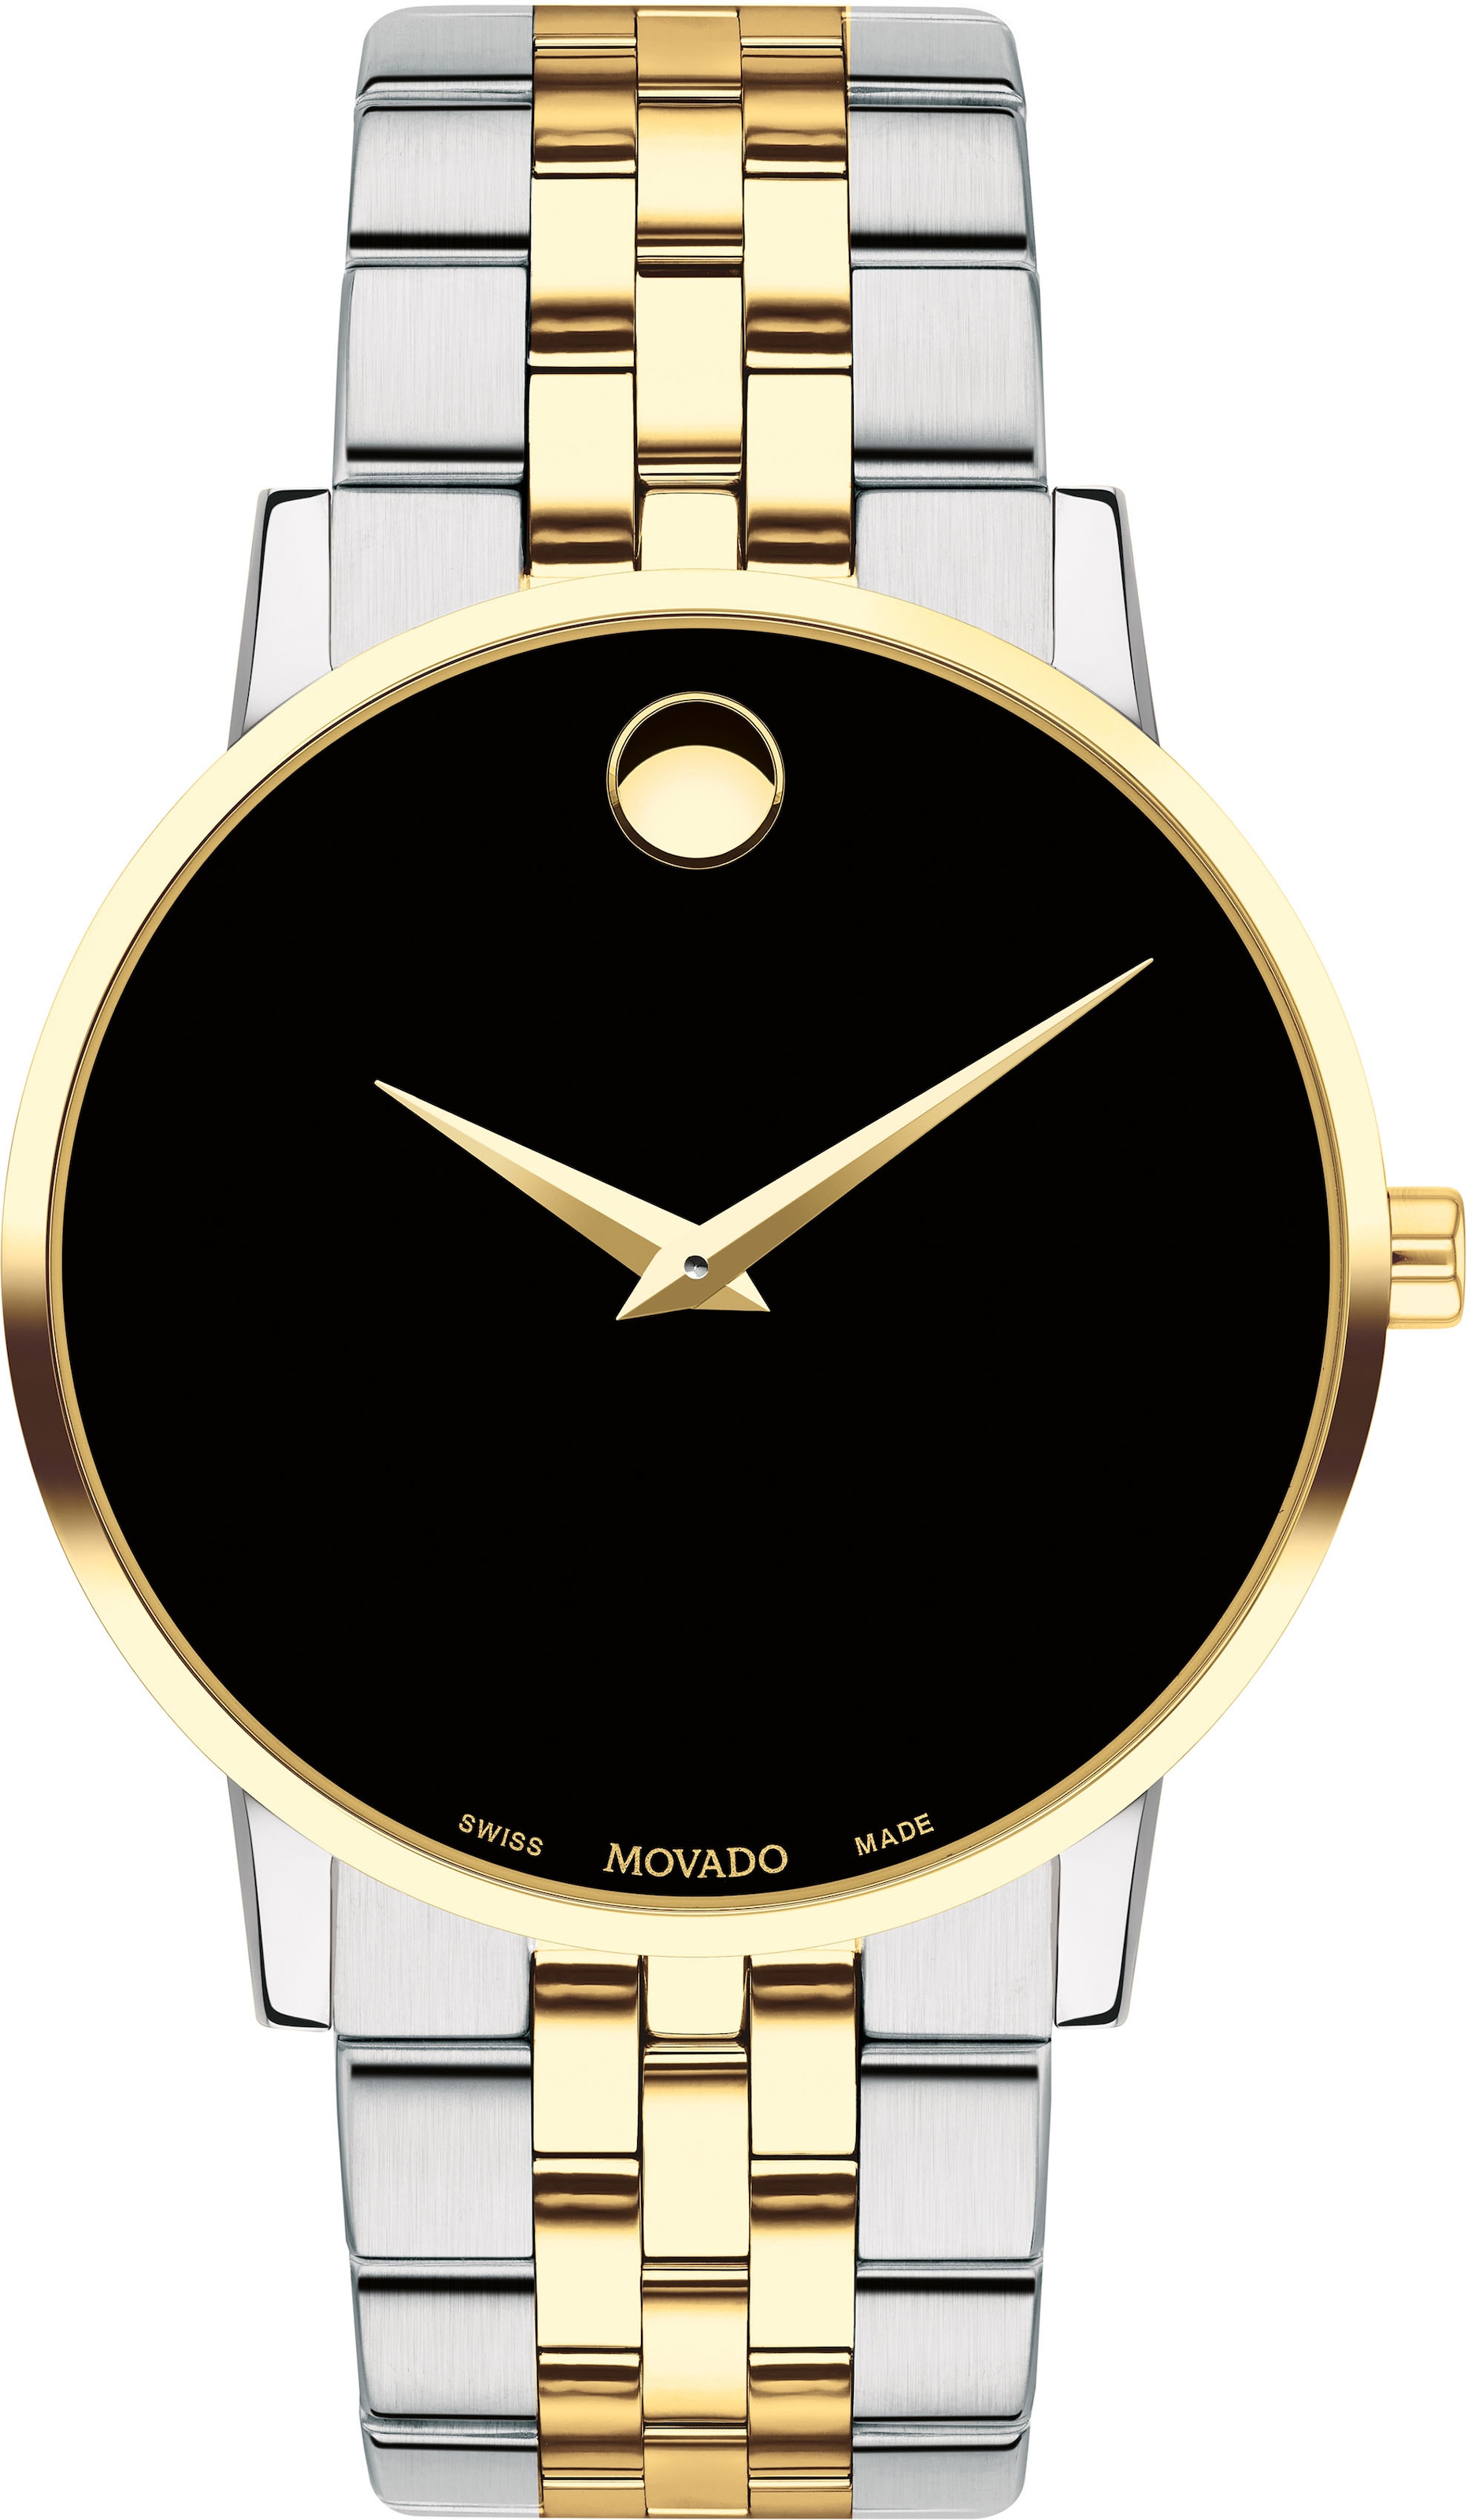 MOVADO Schweizer Uhr »Museum Classic, 0607200« online kaufen bei OTTO